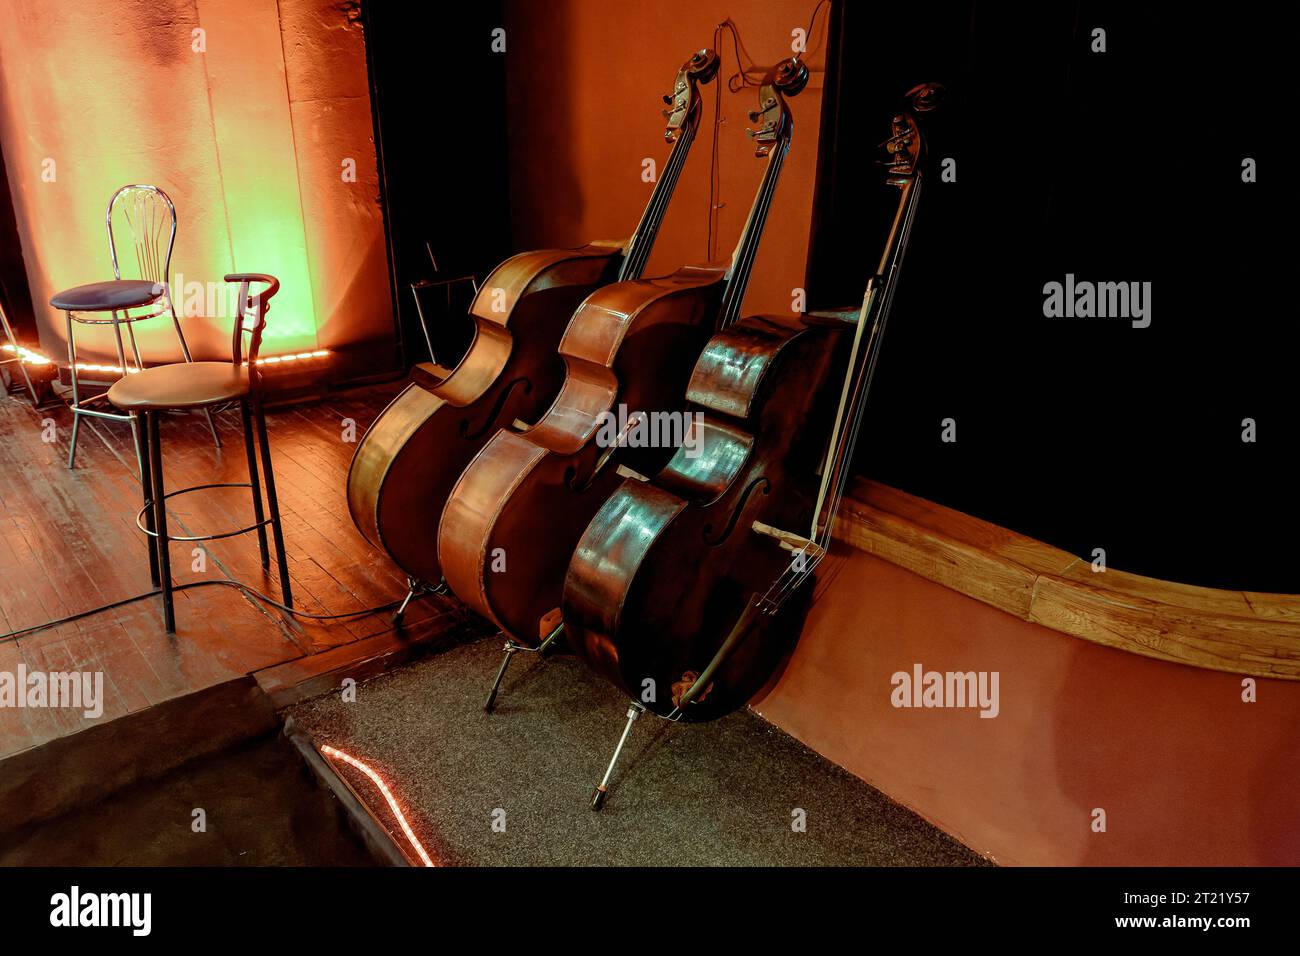 Bild von drei hölzernen Saiteninstrumenten eines Symphonieorchesters mit Doppelbarsch Stockfoto